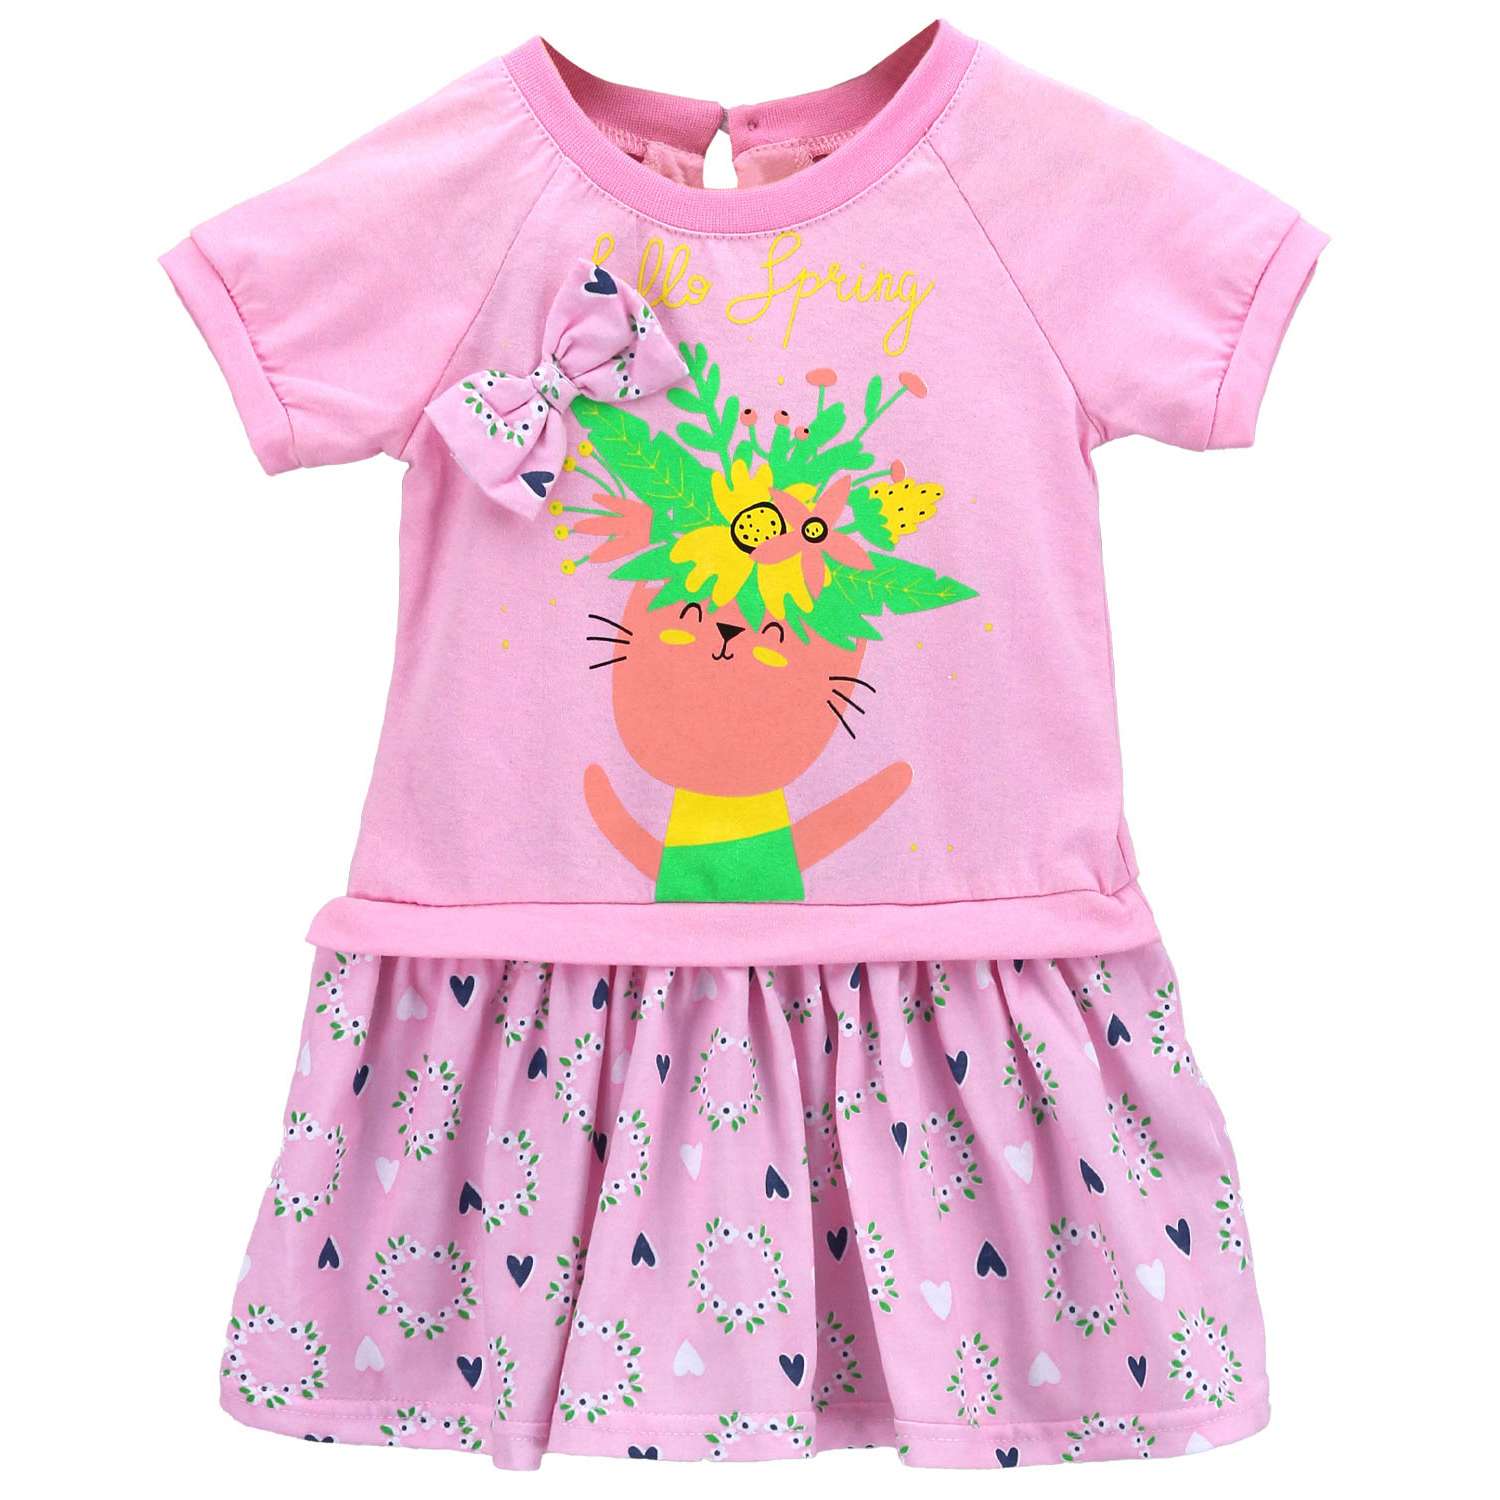 Платье Babycollection 00-00025857бледно-розовый,салатовый - фото 1